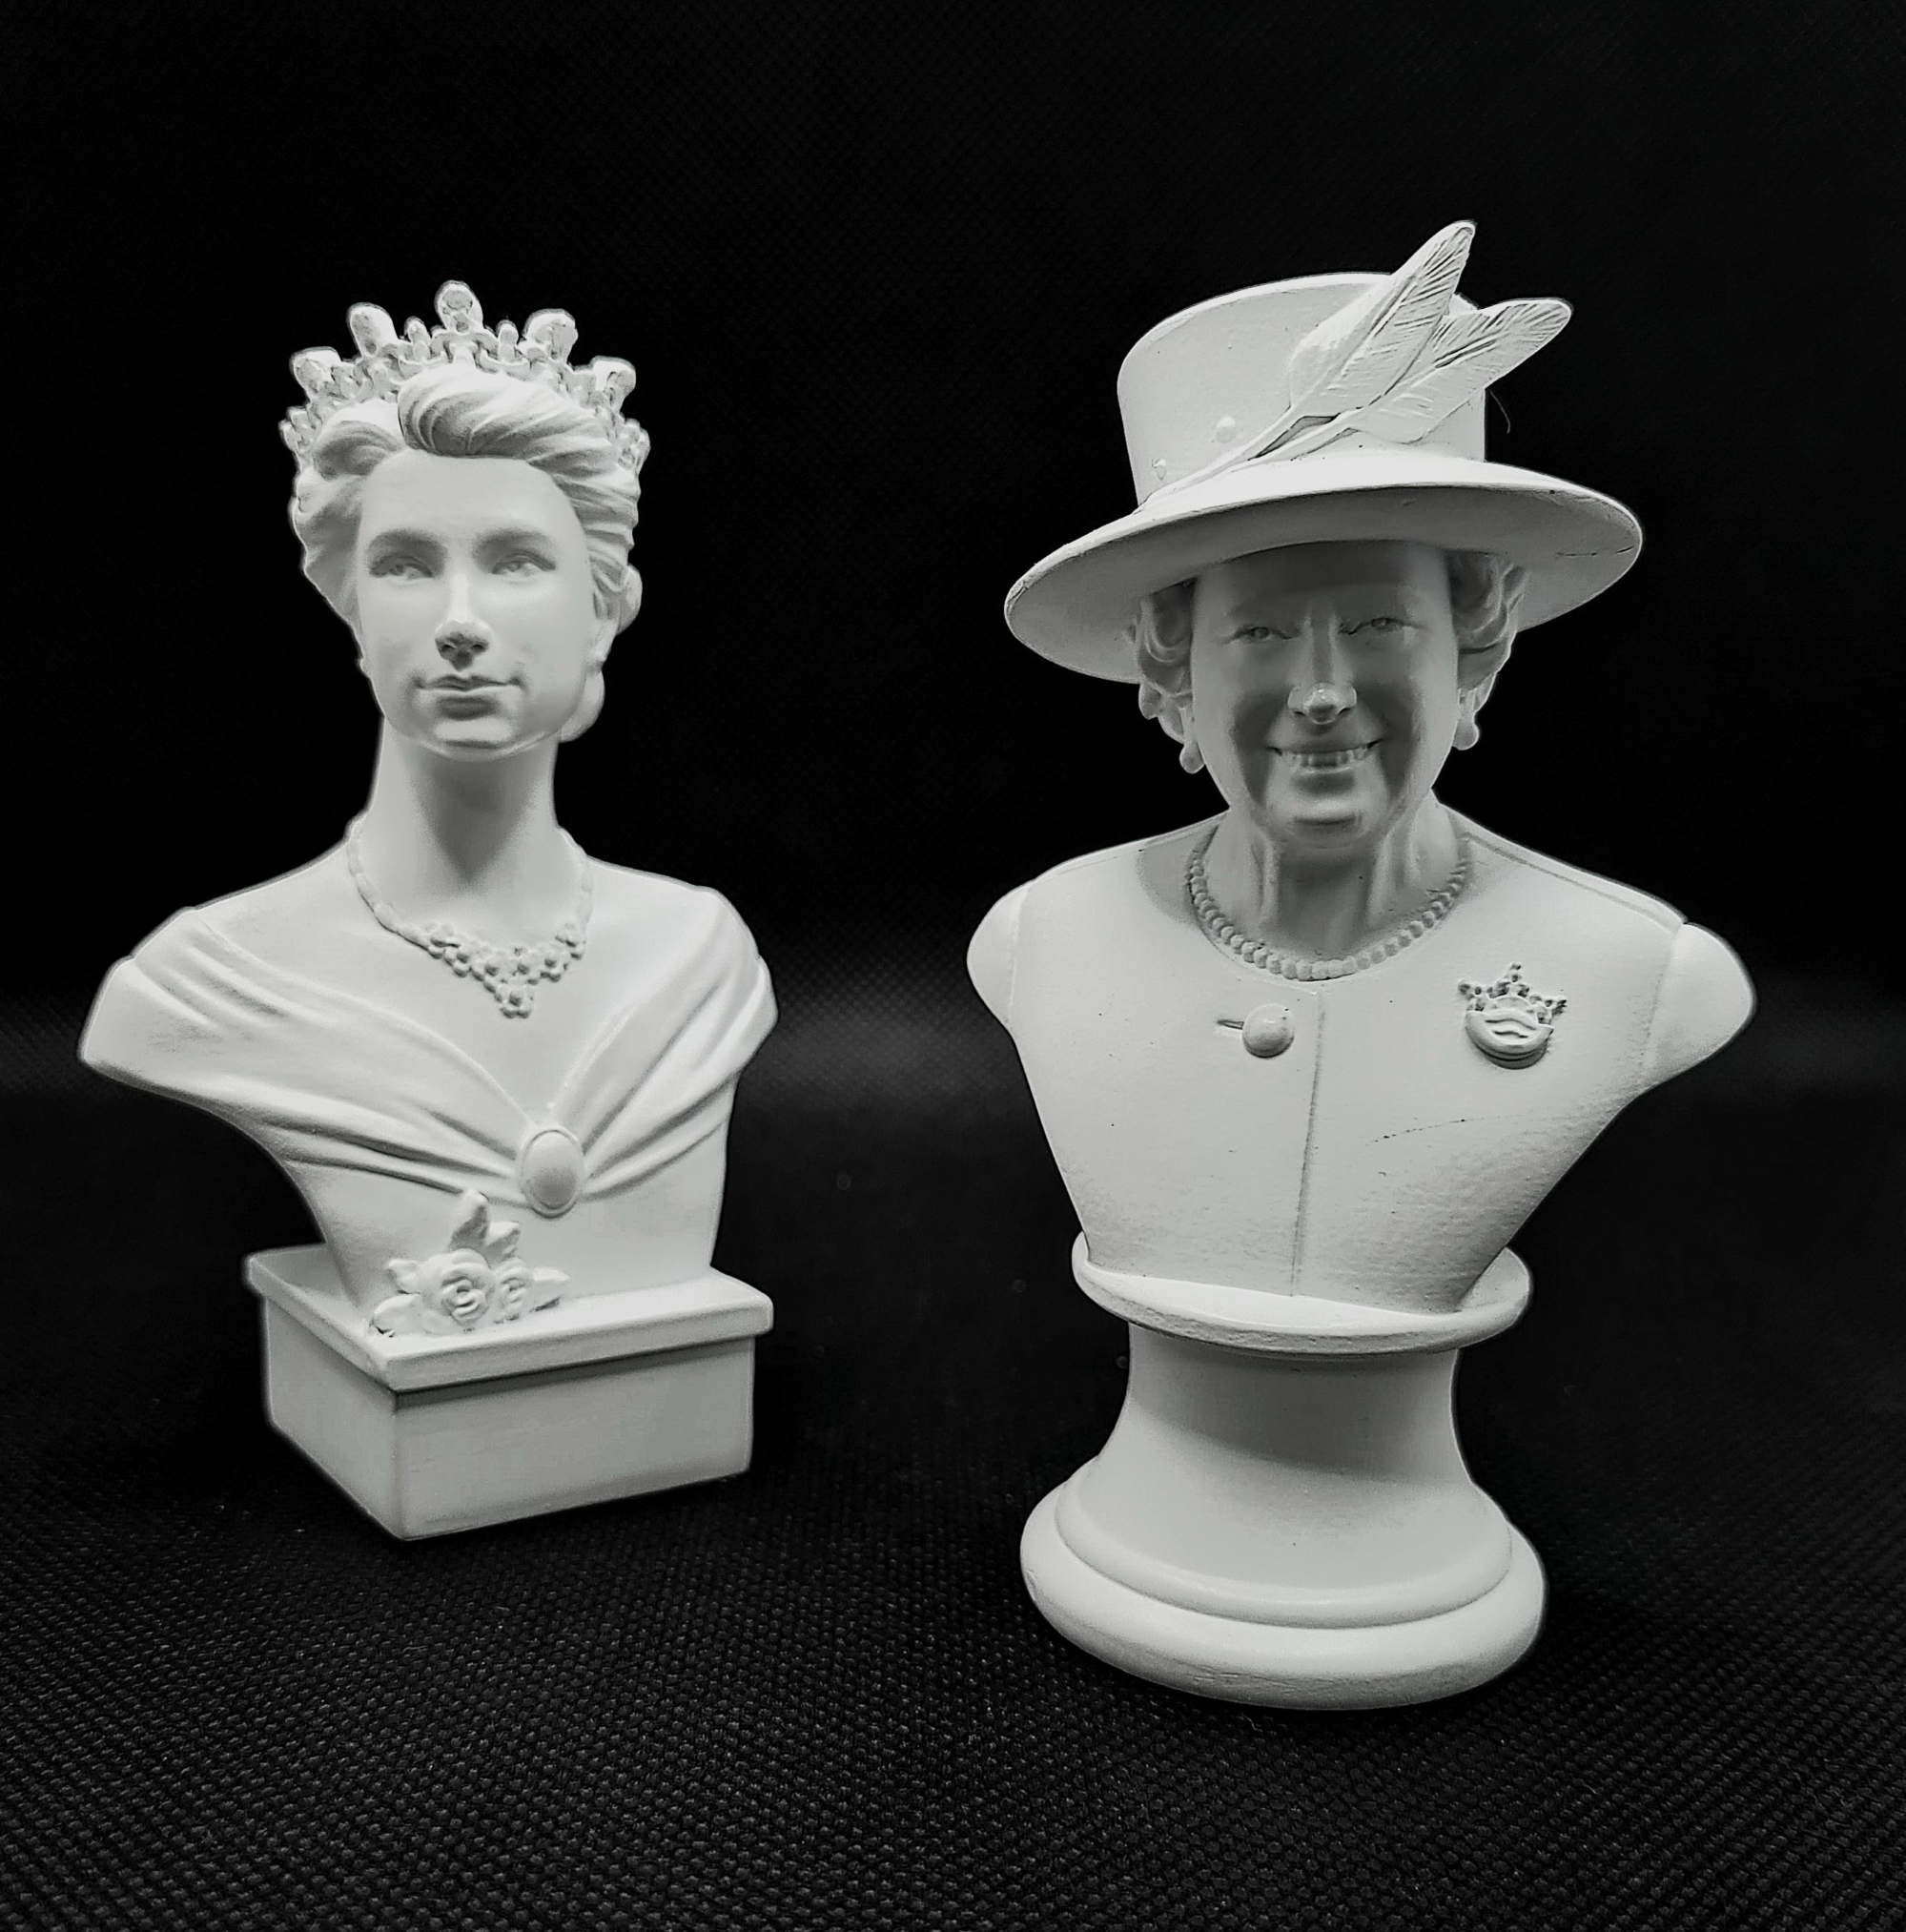 Queen Elizabeth II Figurines 1952-2022